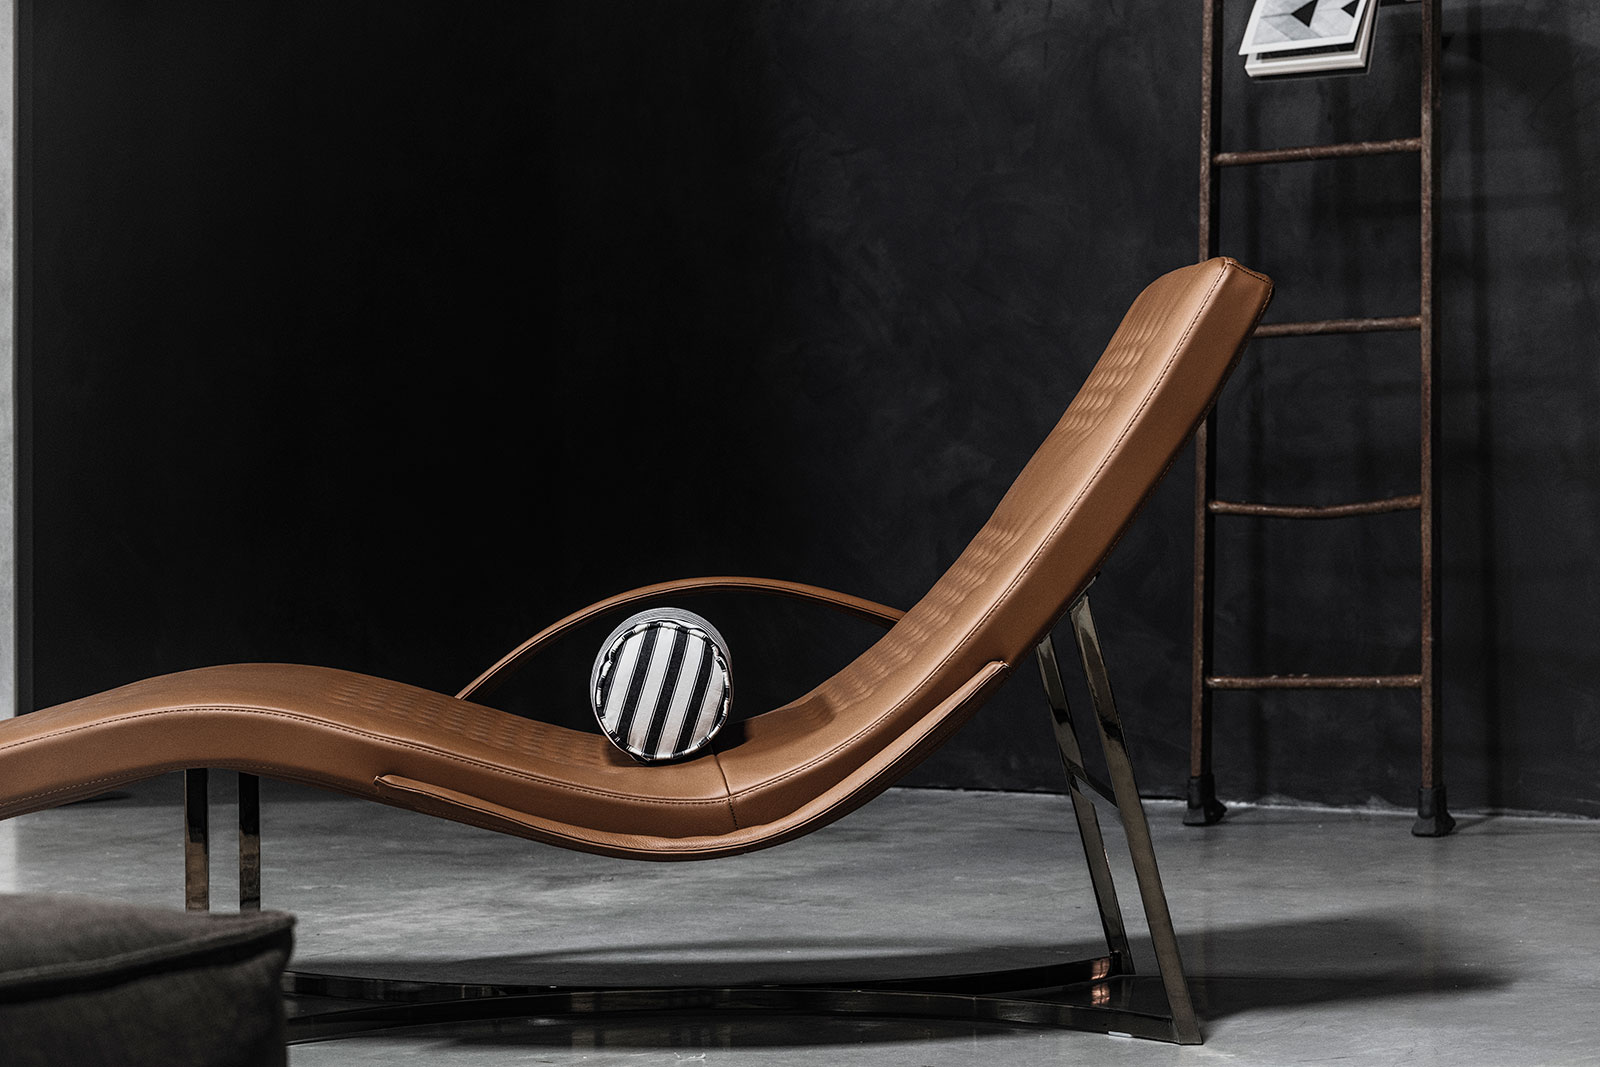 Chandelier chaise longue, Shop Online